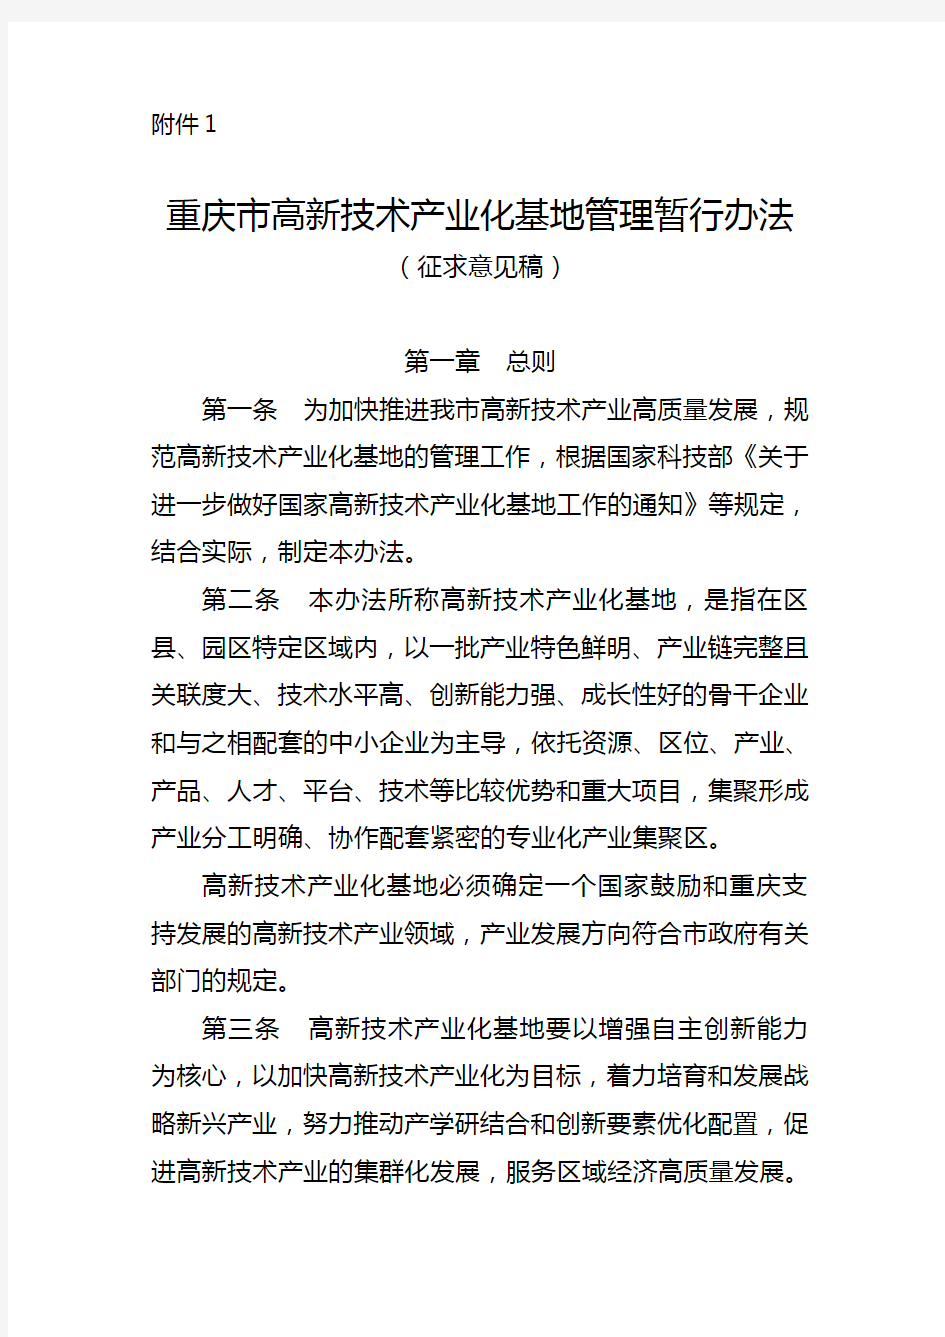 《重庆市高新技术产业化基地管理暂行办法》